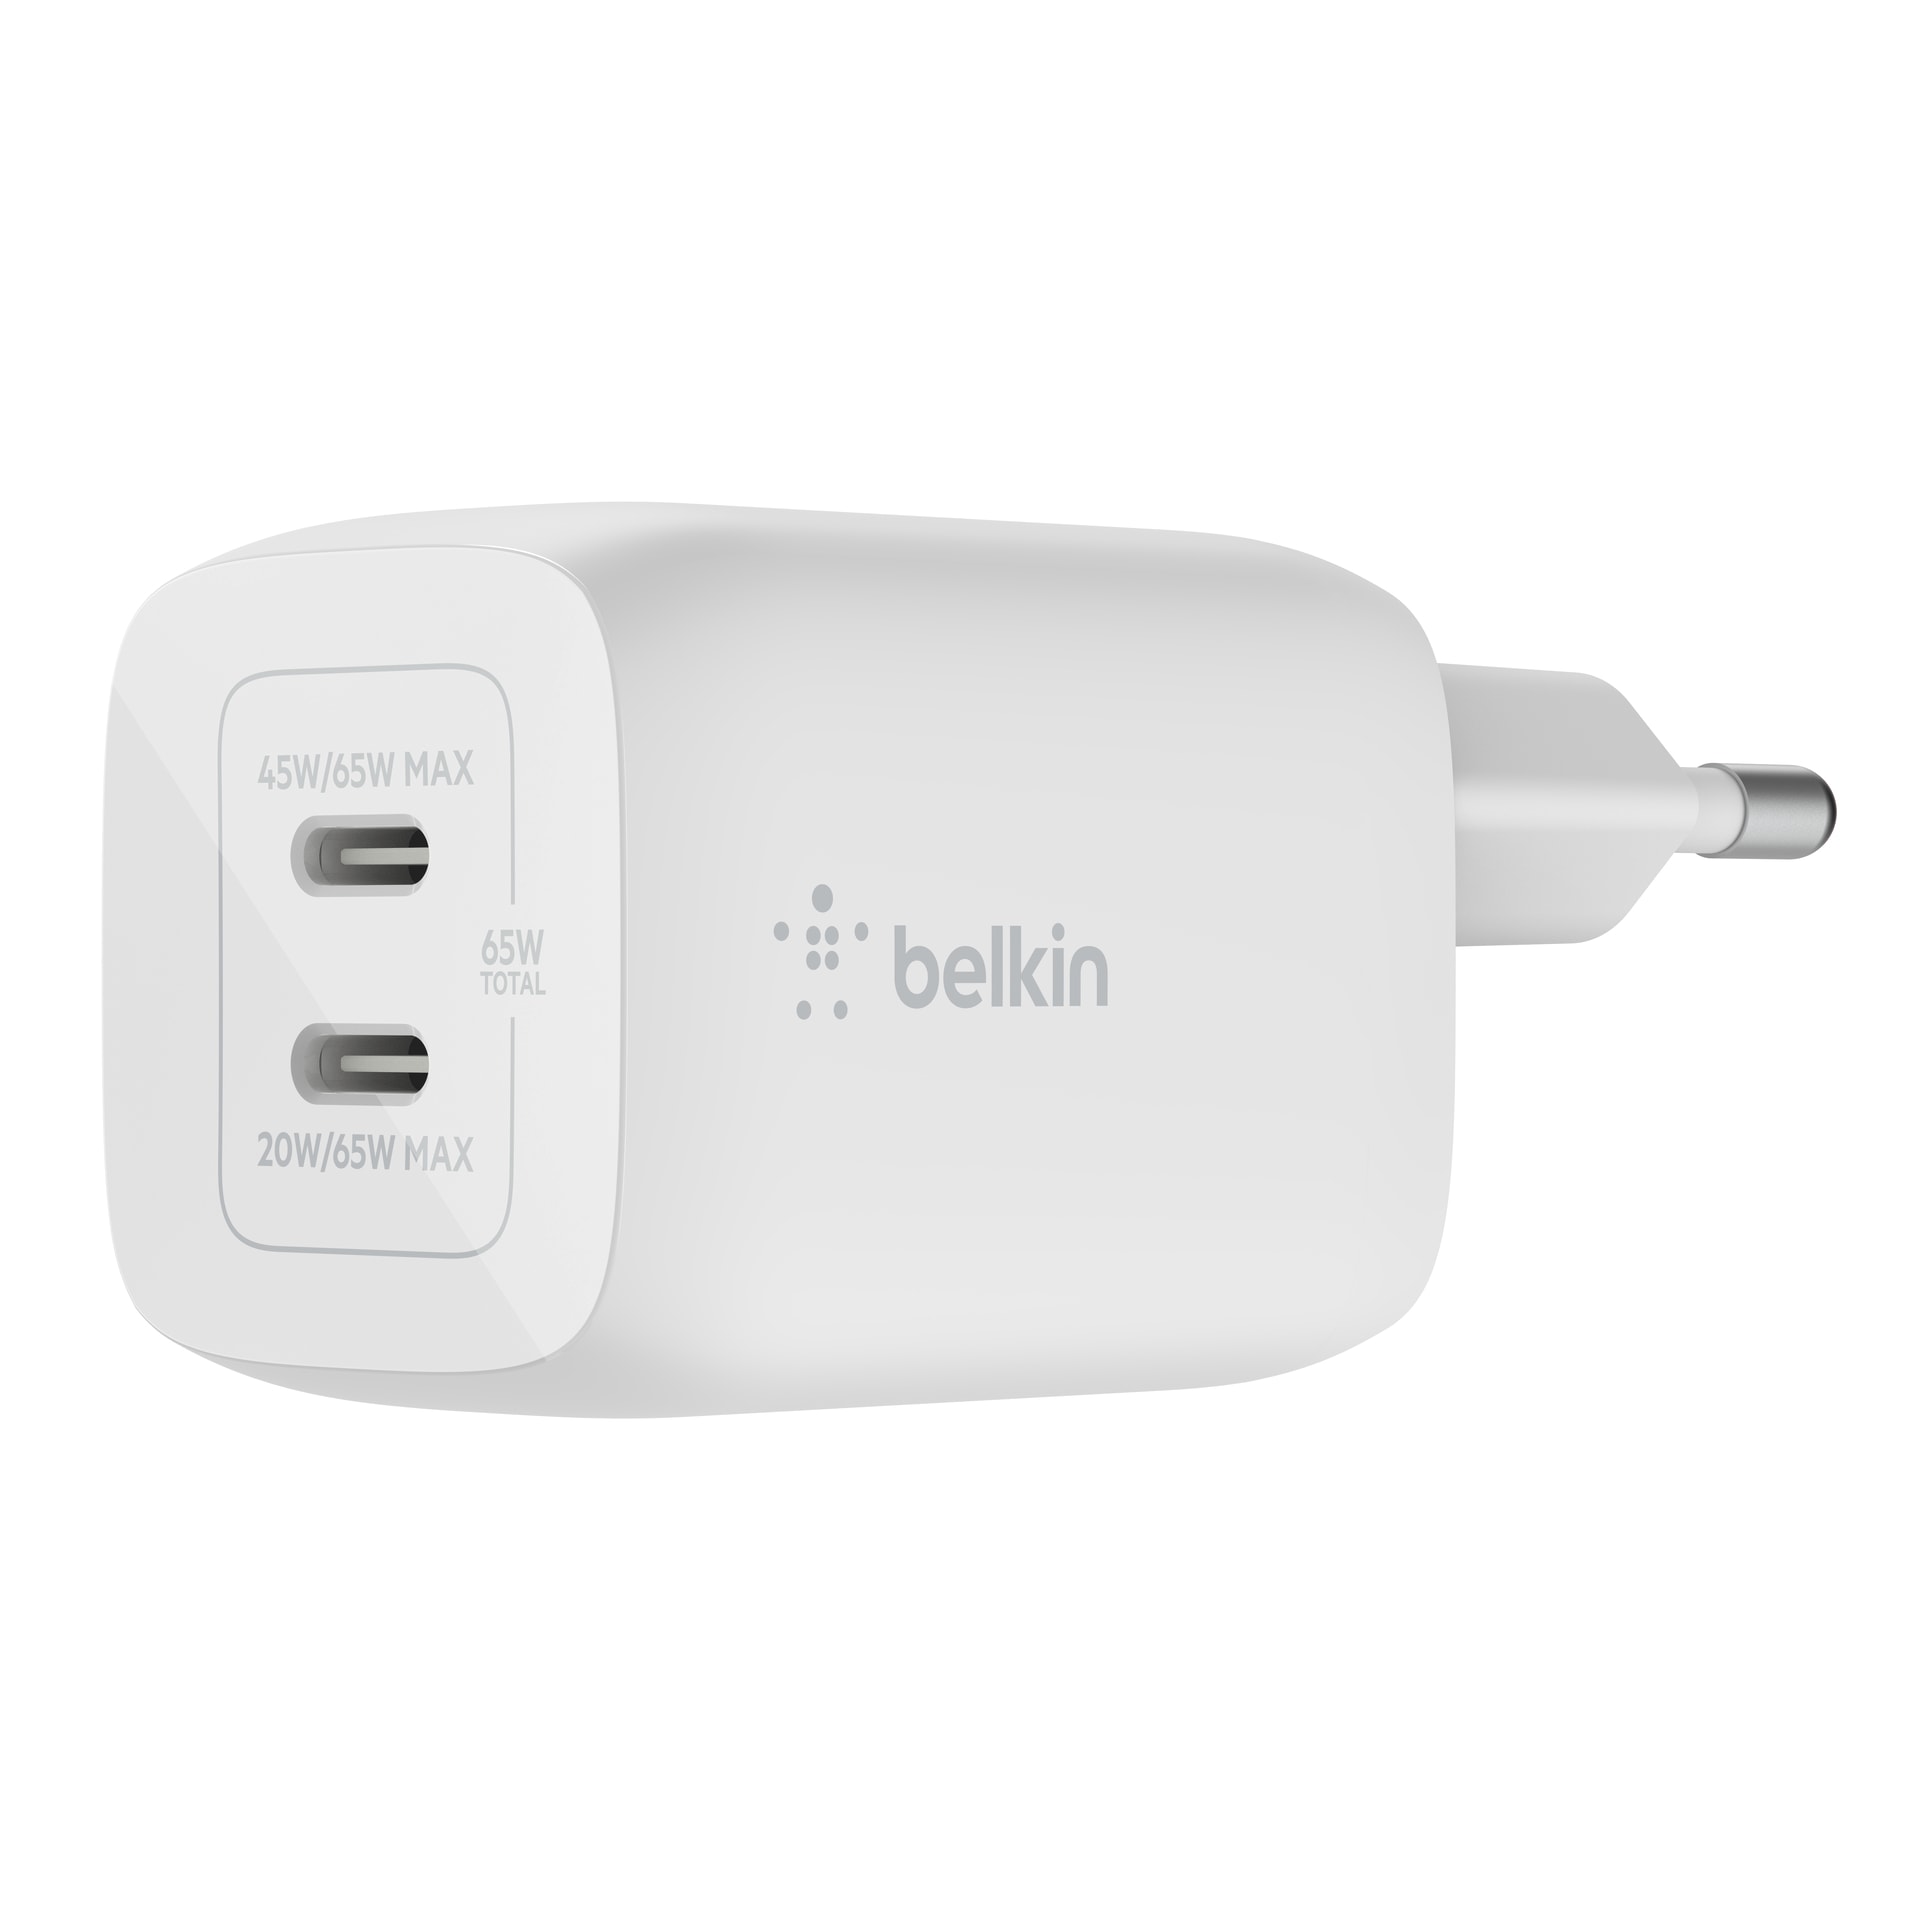 Belkin USB-Ladegerät »65W Dual USB-C GaN Ladegerät mit Power Deliver und PPS«, für Apple iPhone Samsung Galaxy Google Pixel